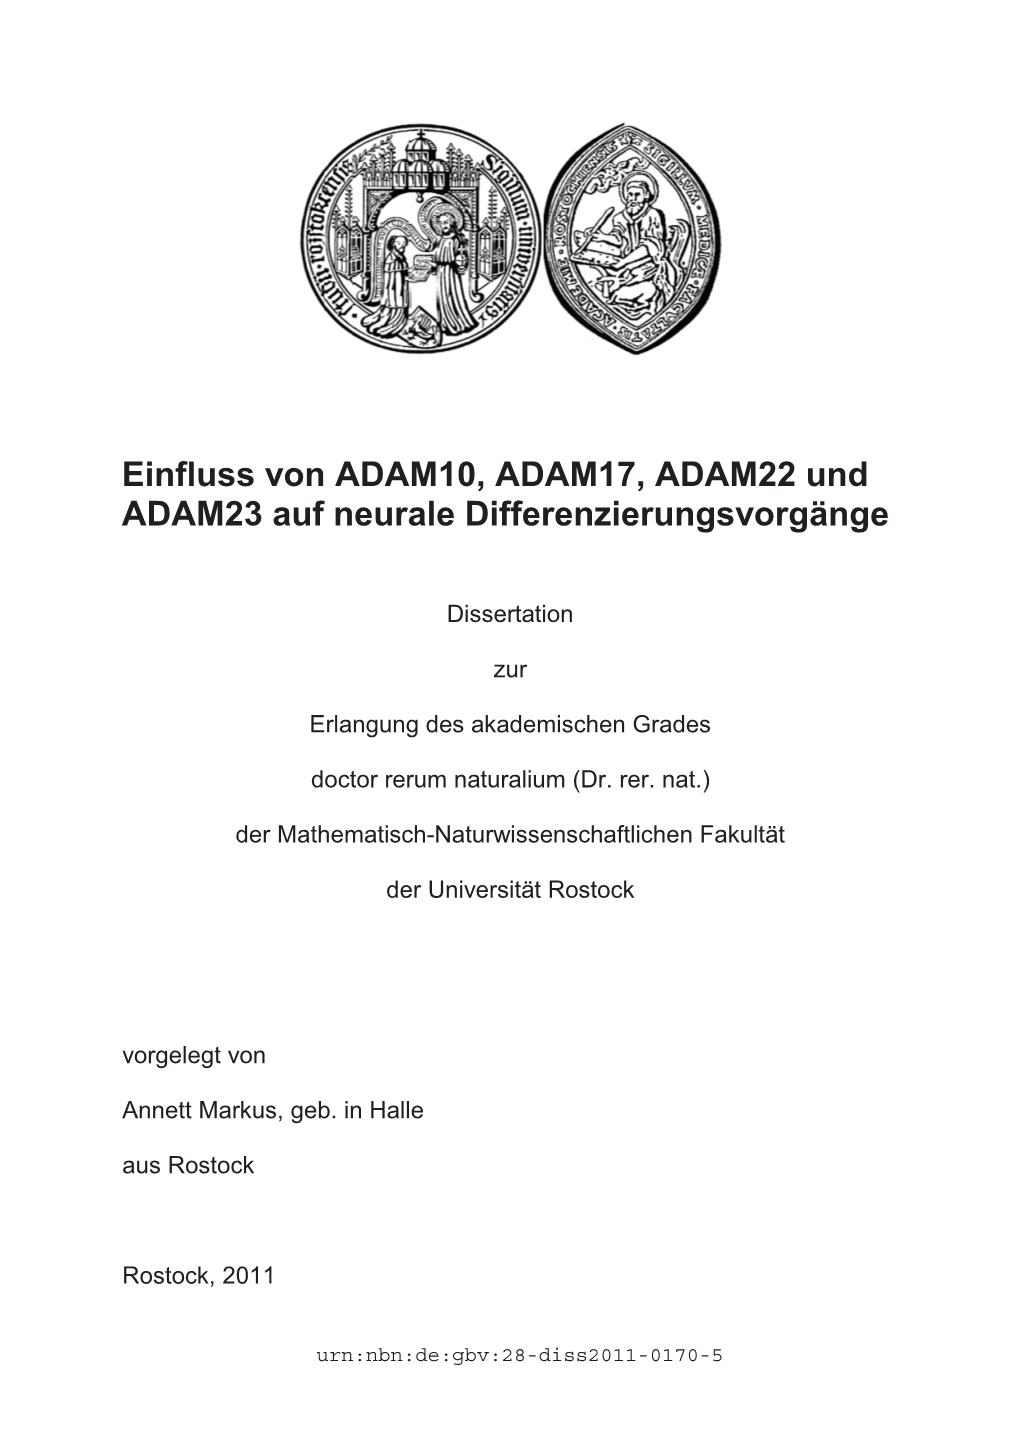 Einfluss Von ADAM10, ADAM17, ADAM22 Und ADAM23 Auf Neurale Differenzierungsvorgänge